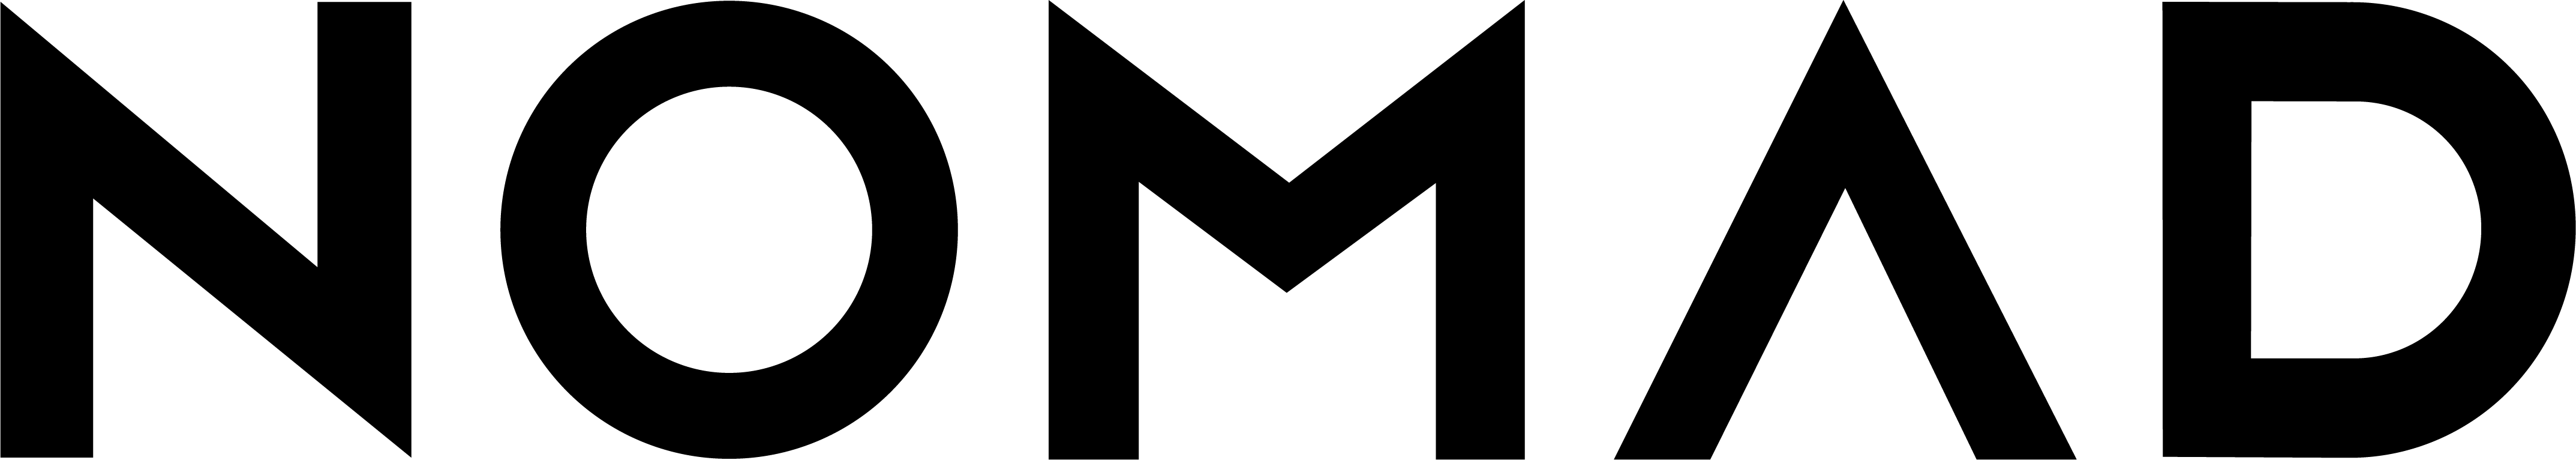 Nomad - Modernes Lederetui - logo